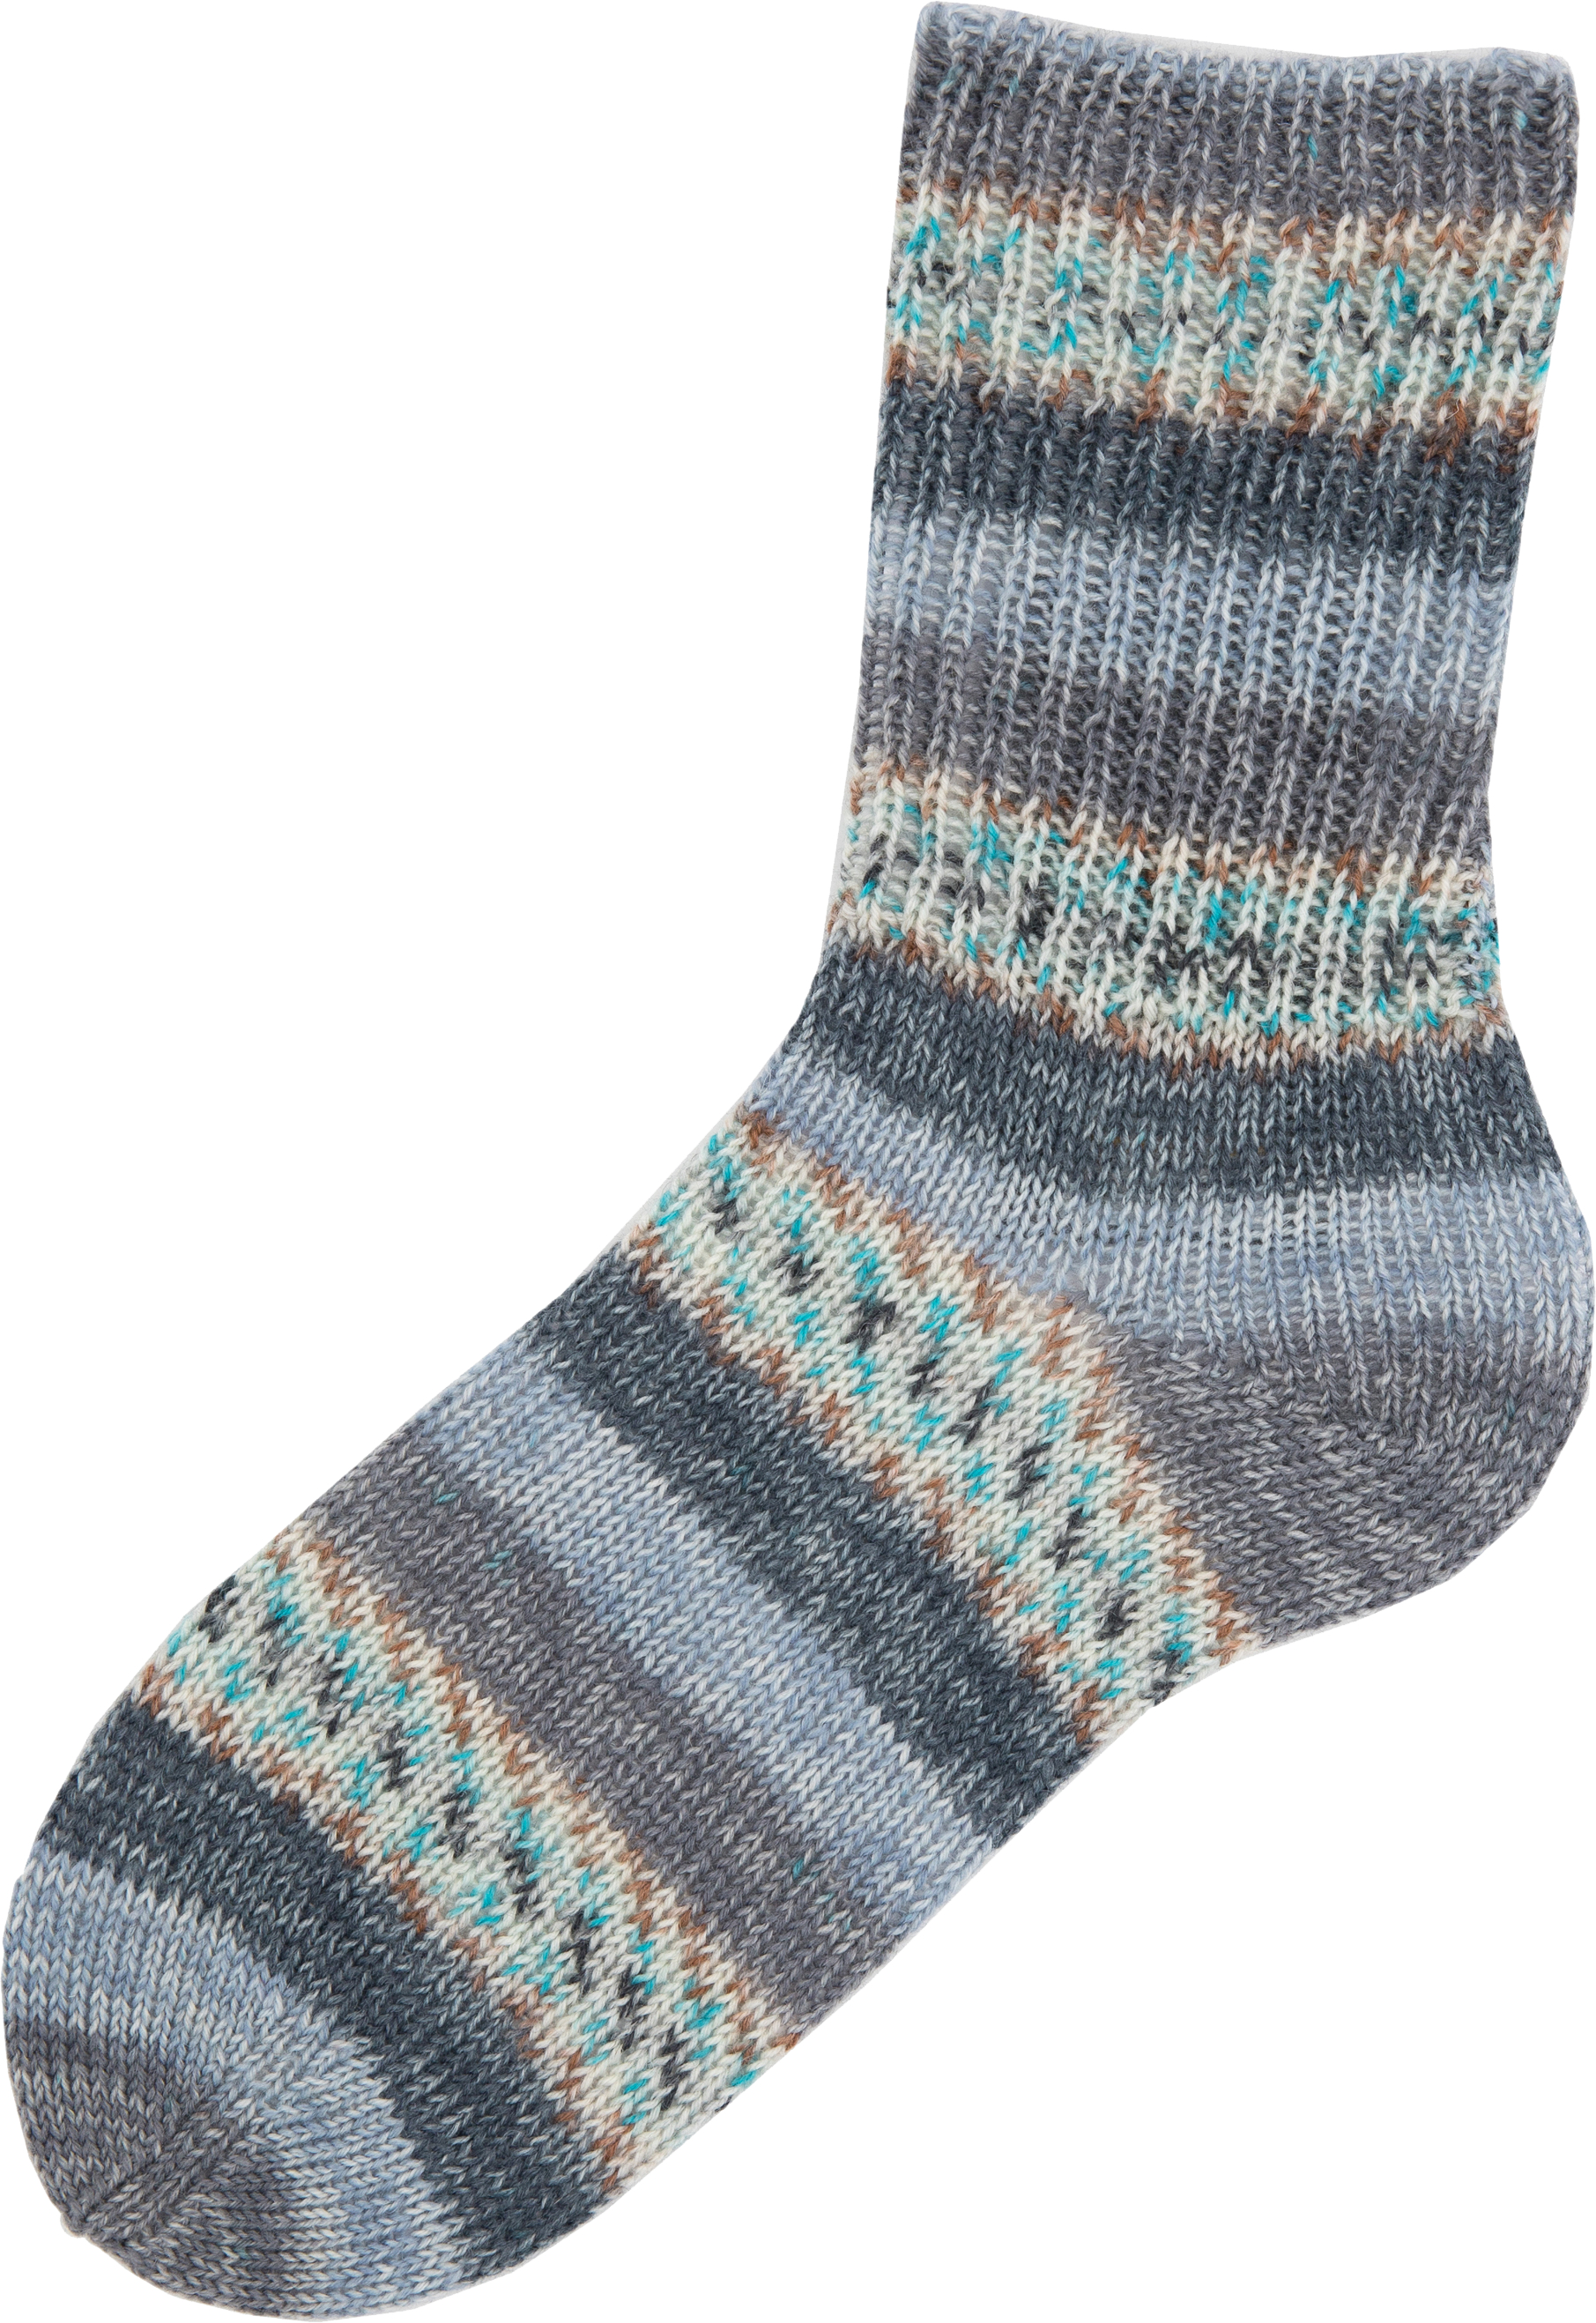 Pelote de laine à chaussettes à tricoter Superba Fair Isle 4 fils